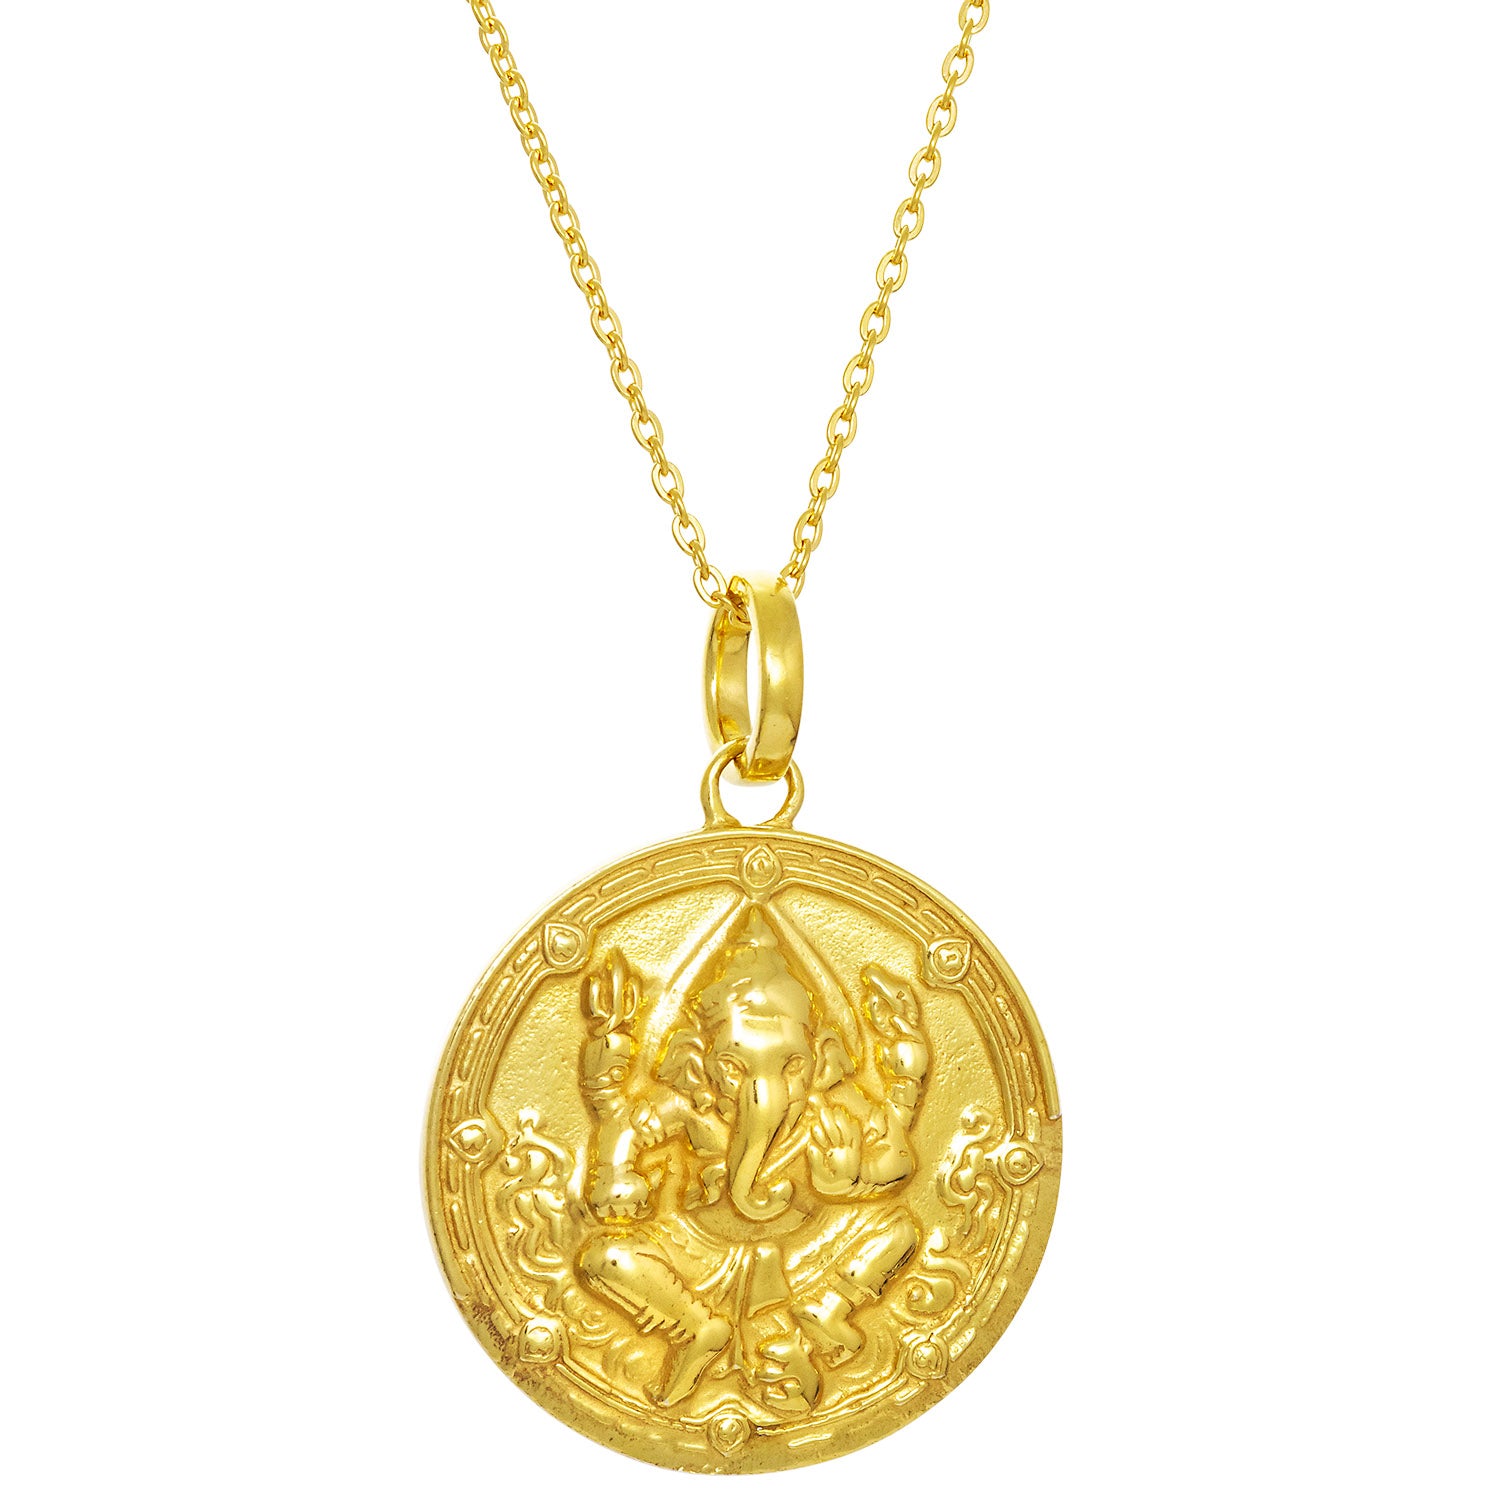 Detailreich ausgearbeitetes Ganesha Amulett aus vergoldetem Sterling Silber von ETERNAL BLISS - Spiritueller Schmuck